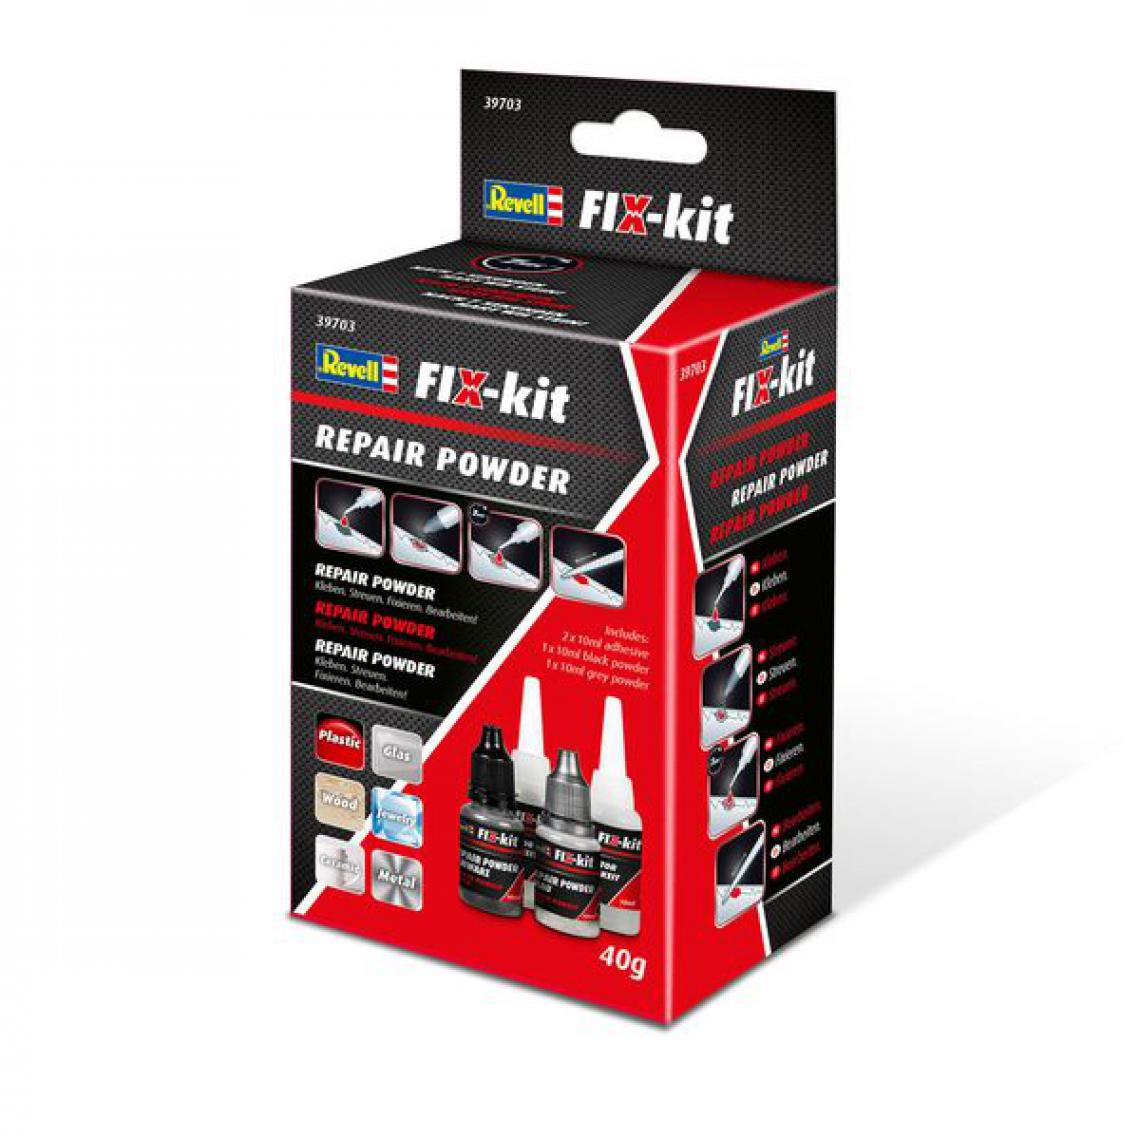 Revell - FIX-kit Repair Powder - Revell - Accessoires et pièces